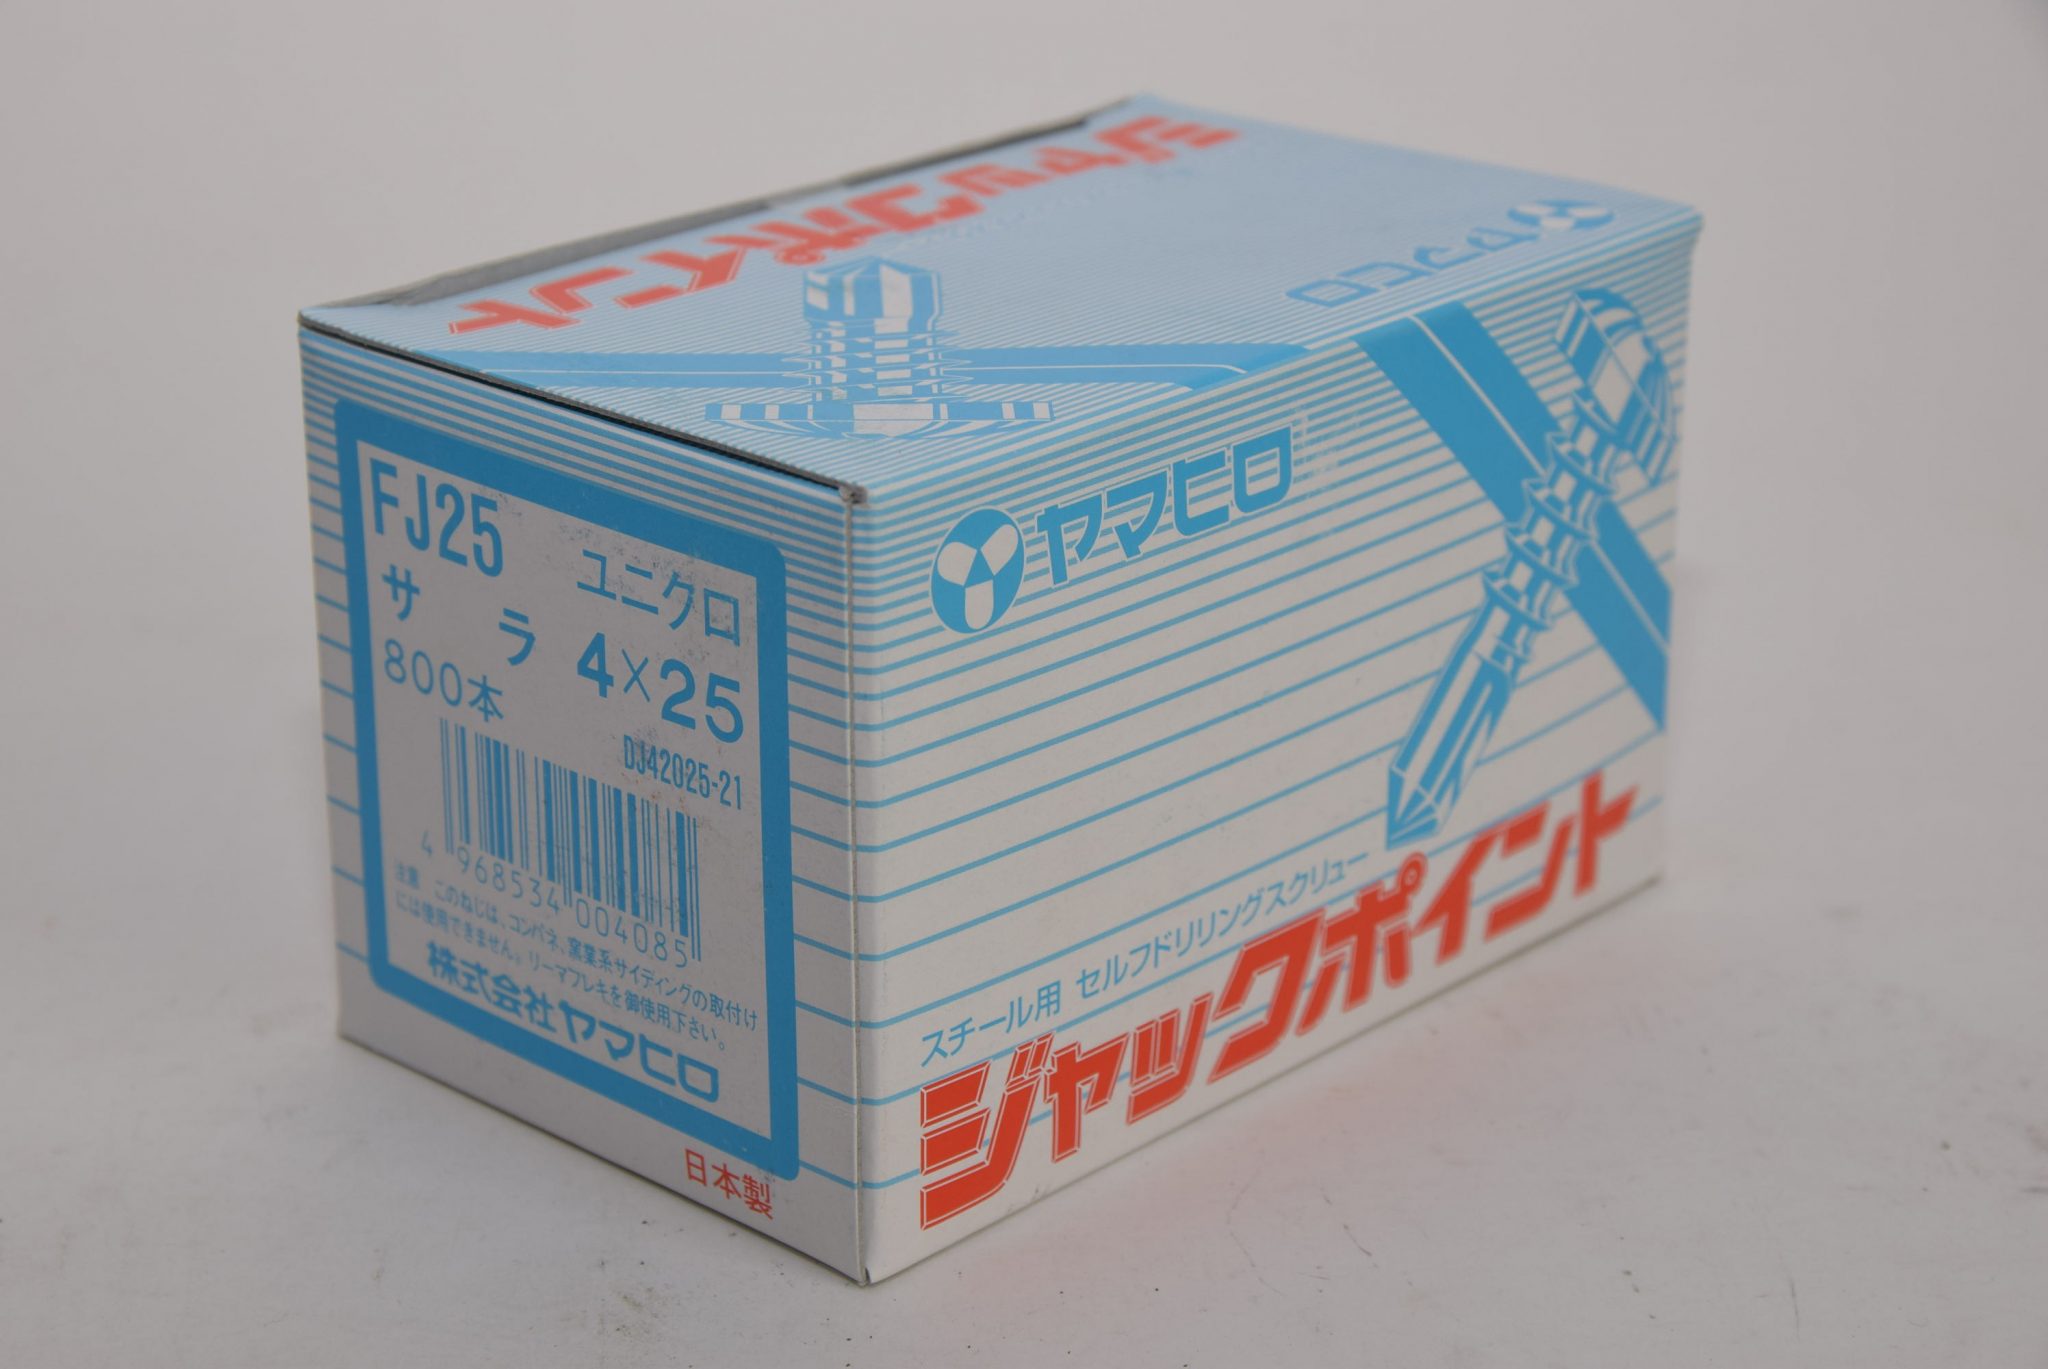 ヤマヒロ ジャックポイント サラ FJ65 (4×65) 200本×10箱